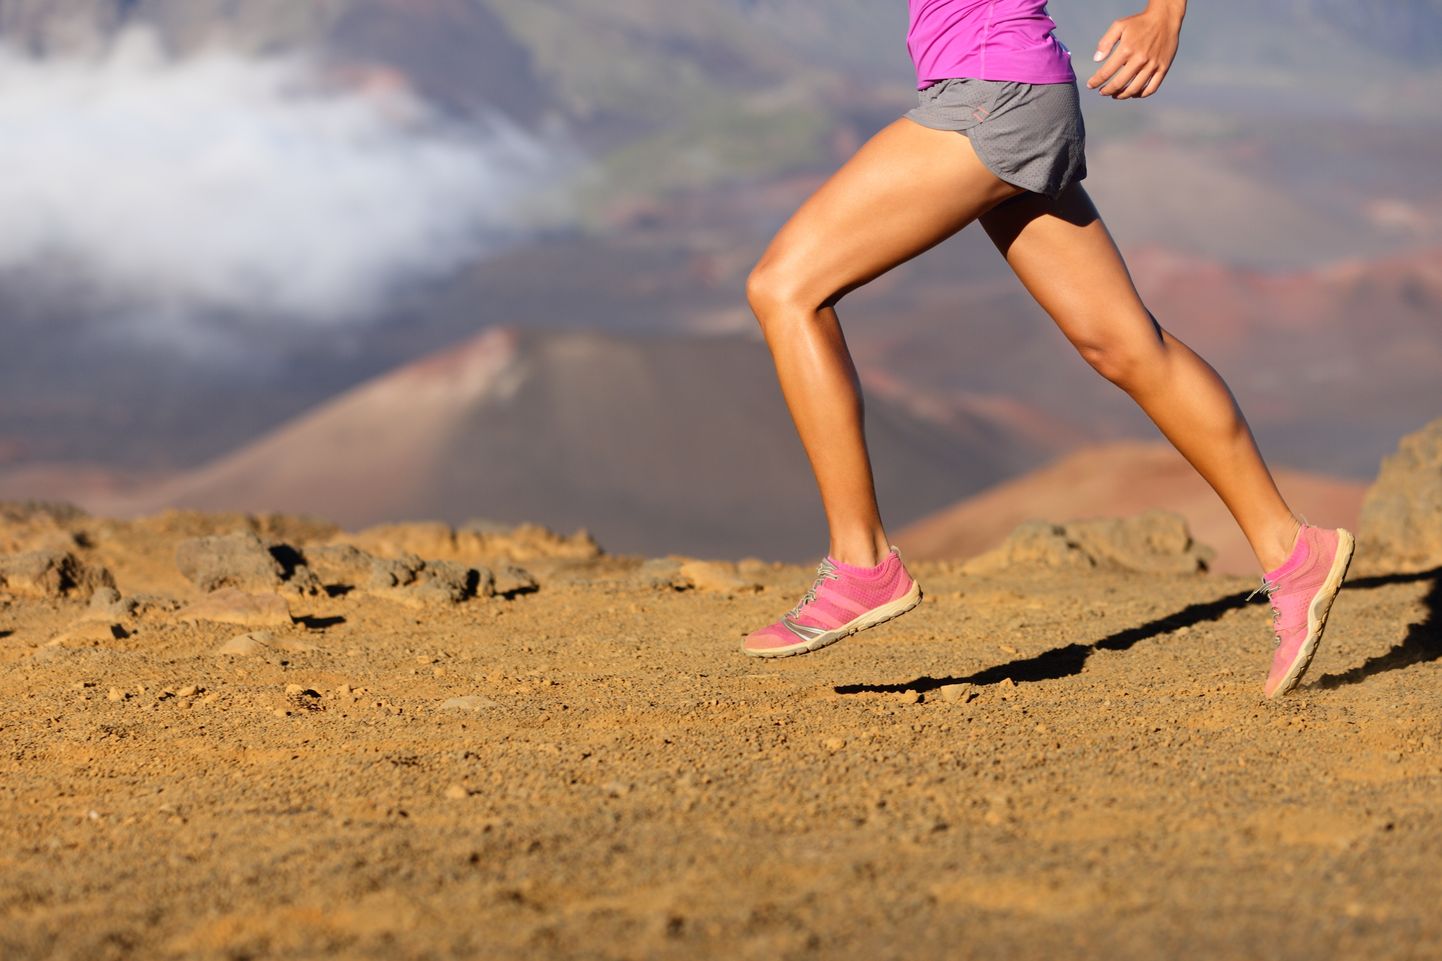 Minimalistlikud jooksujalanõud on kerged, õhukese ja elastse tallaga, kanna- ja varbaosa väiksema kõrgusvahega ning ilma lisapehmendusteta, mistõttu need pakuvad jalale minimaalset tuge.